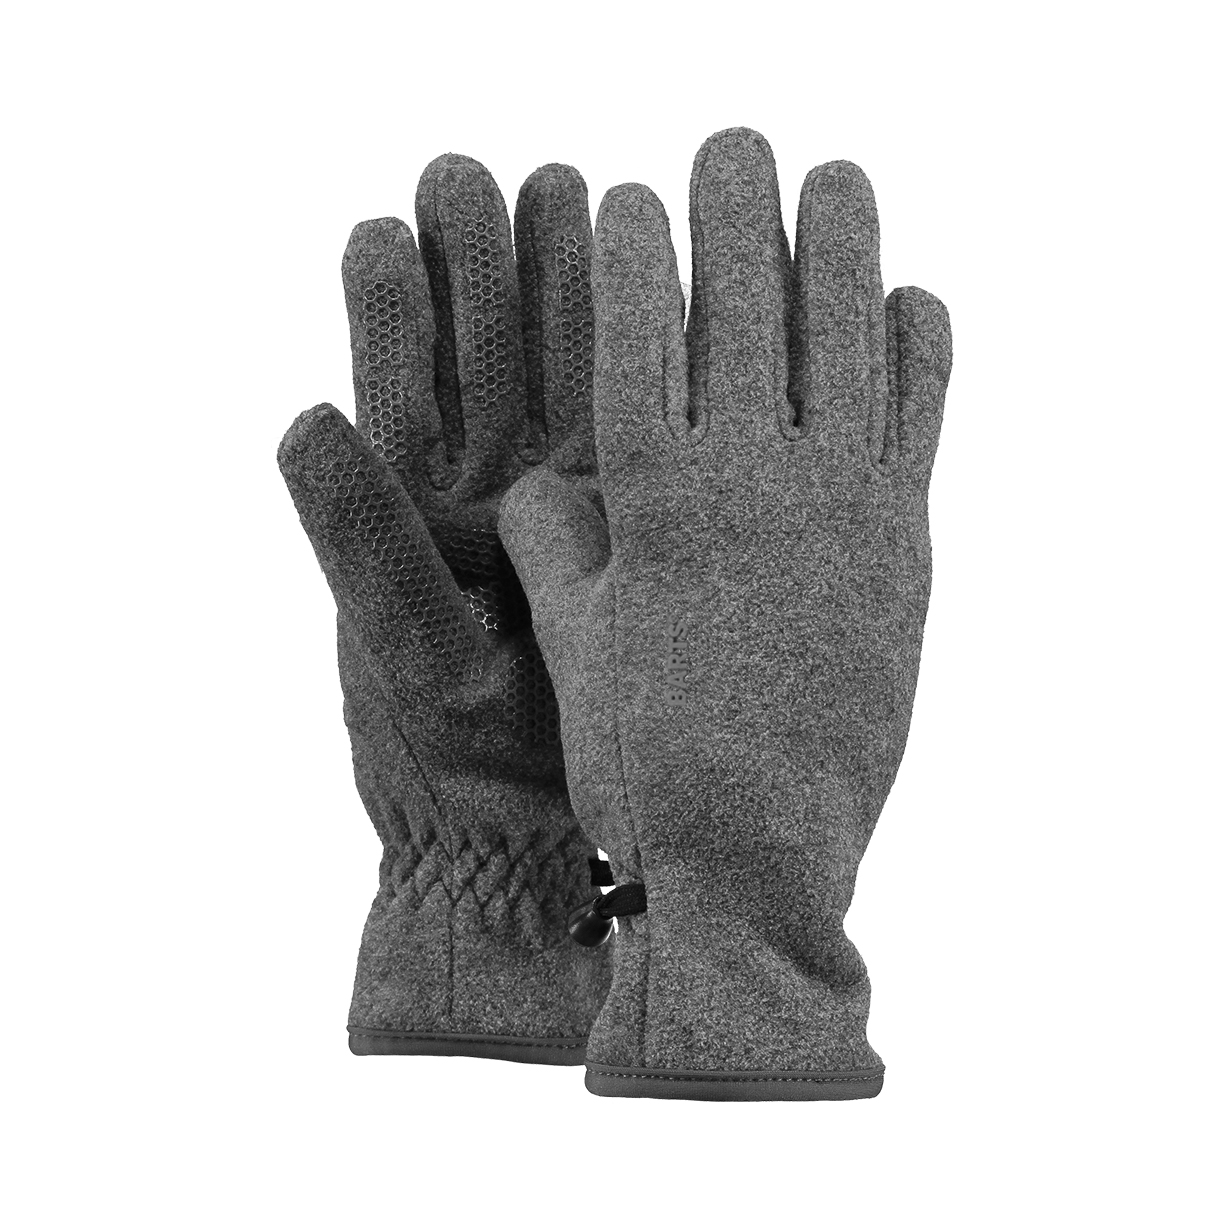 Zelfrespect Paragraaf server Barts handschoenen - Fleece lichtgrijs | Hippeschoentjes